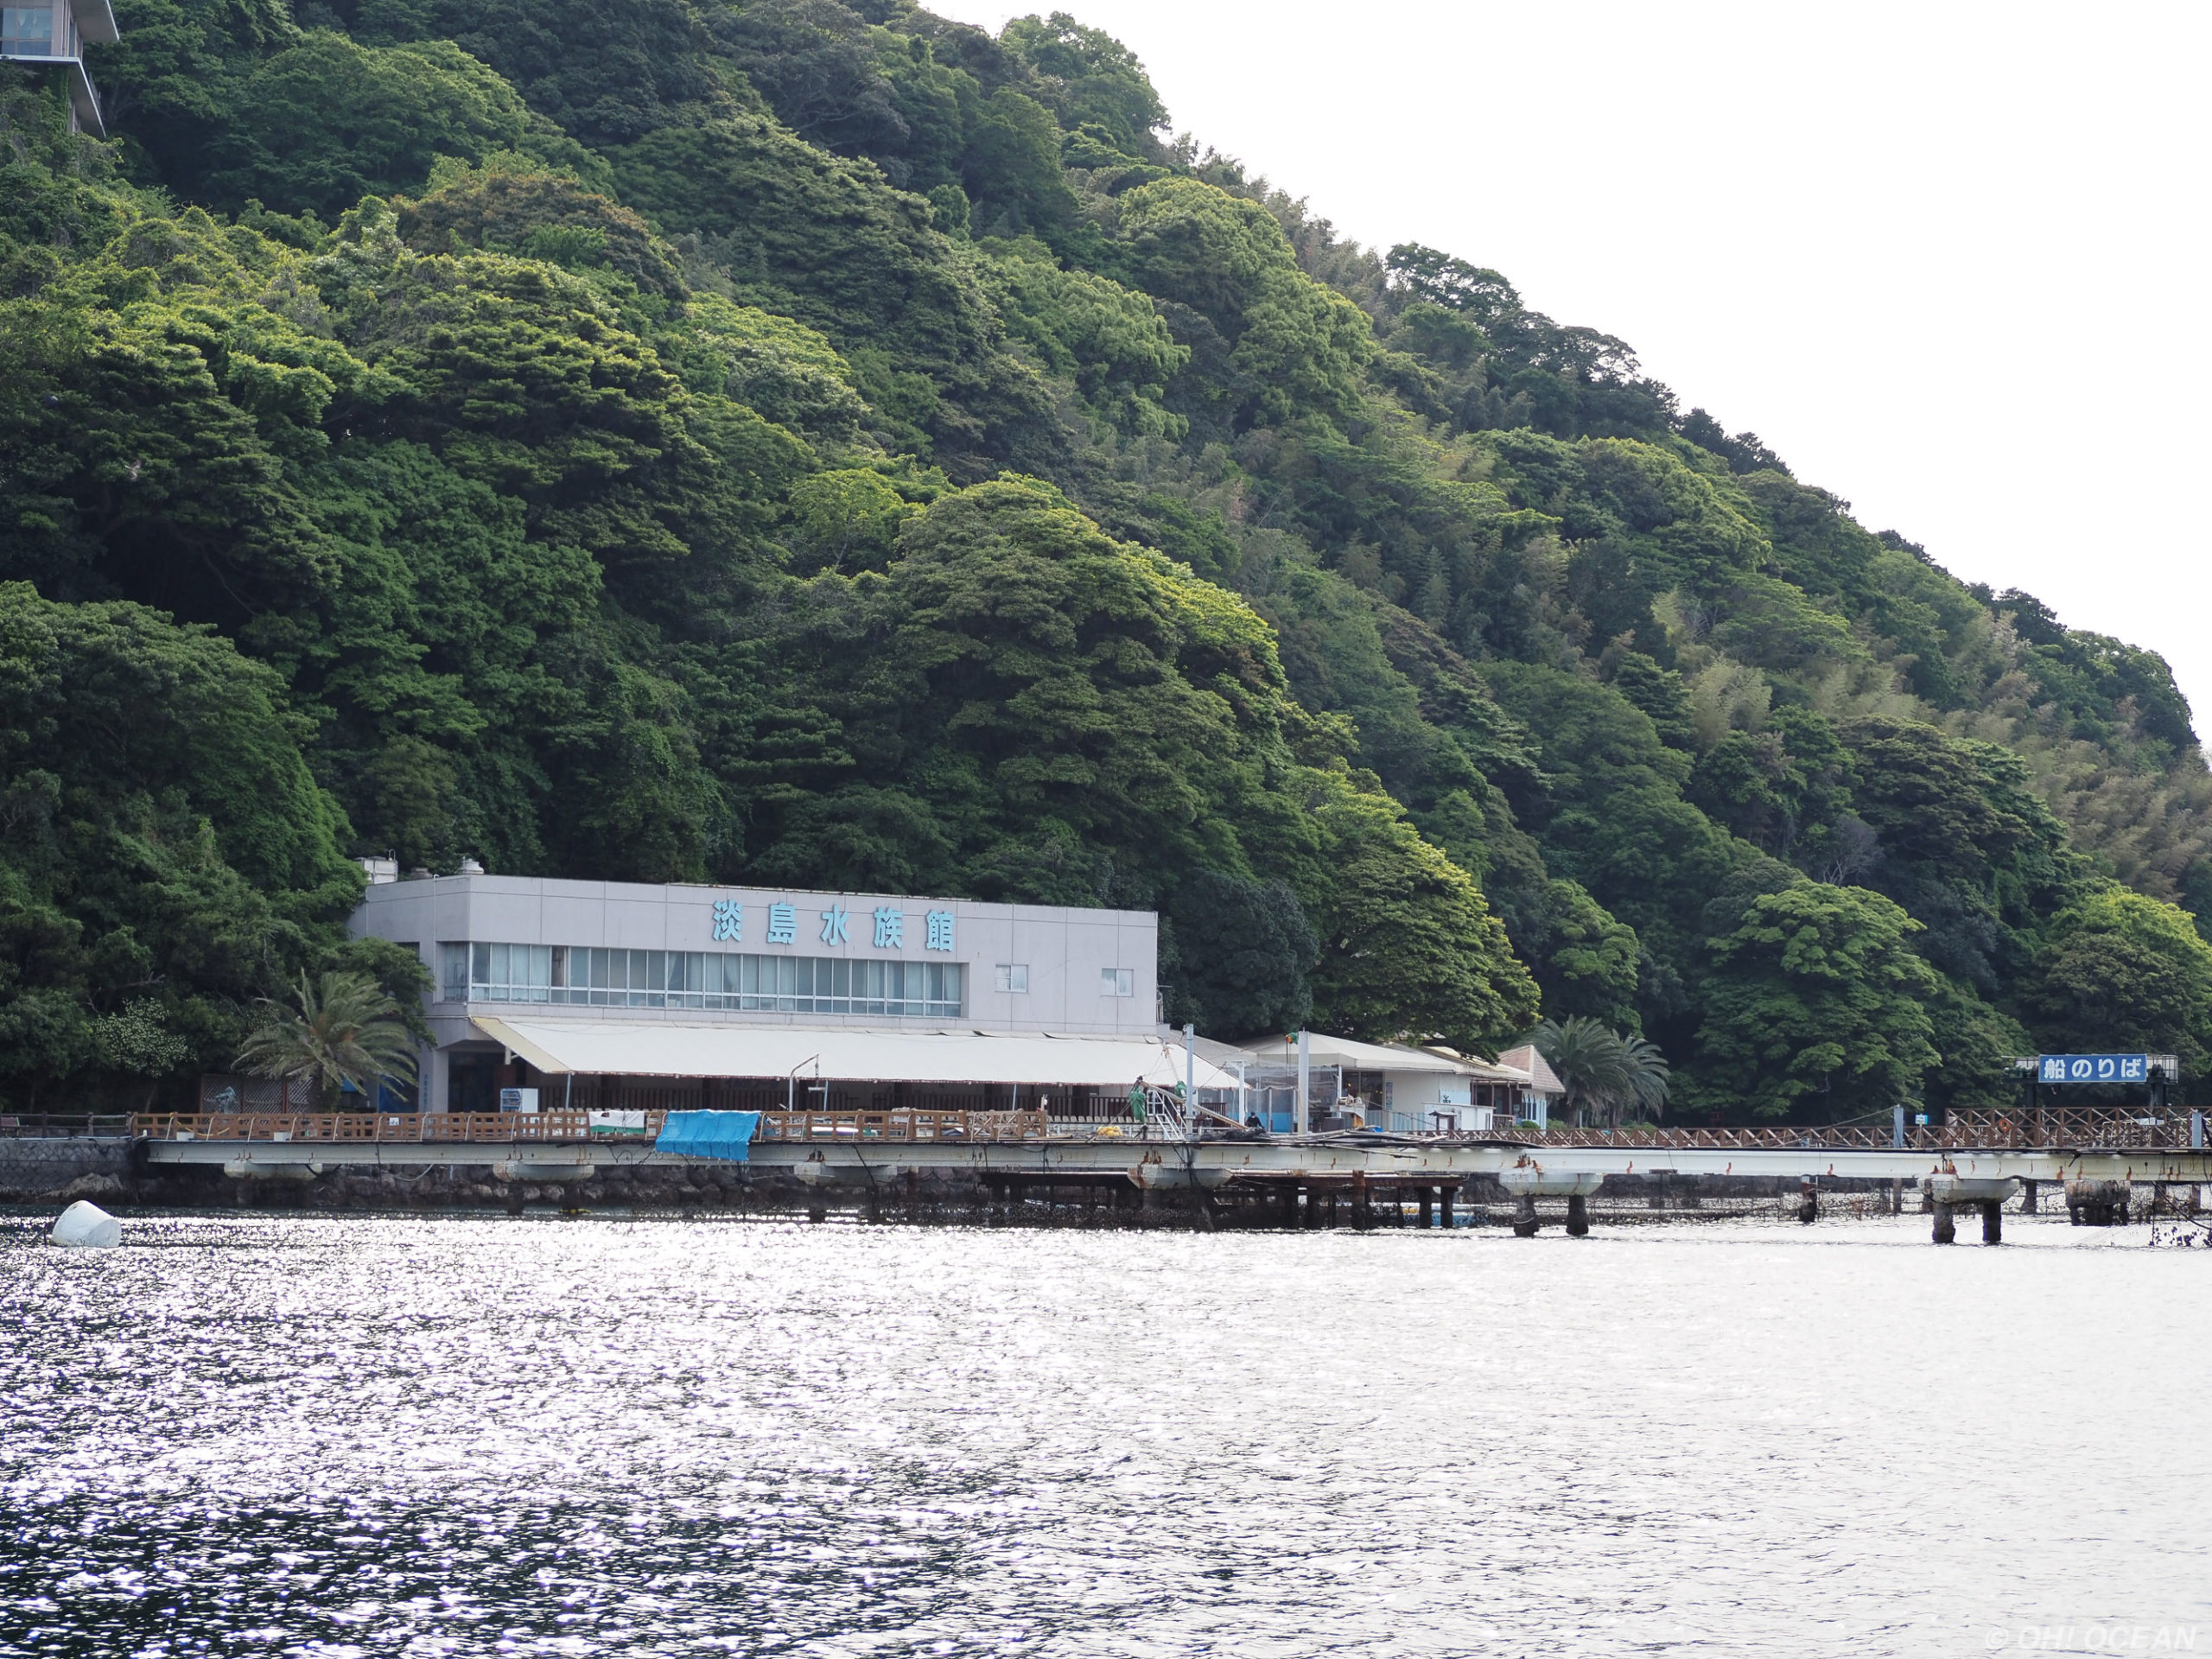 渡し船で行く水族館、魅力は島全体にあった＋写真39枚【静岡県沼津市・あわしまマリンパーク】